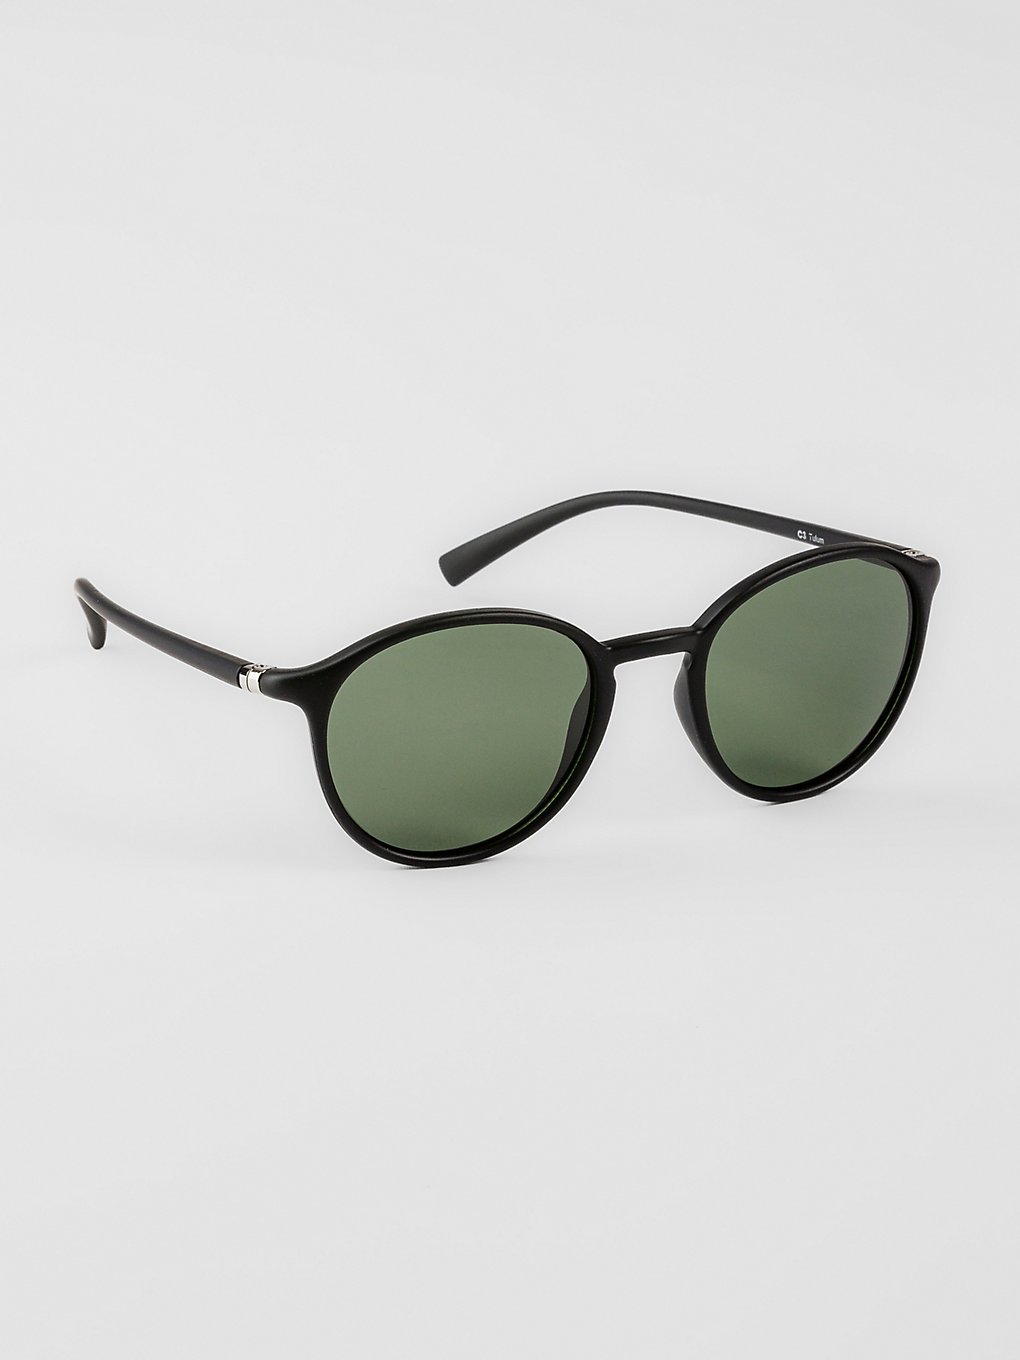 MasterDis Tulum Black Sunglasses green